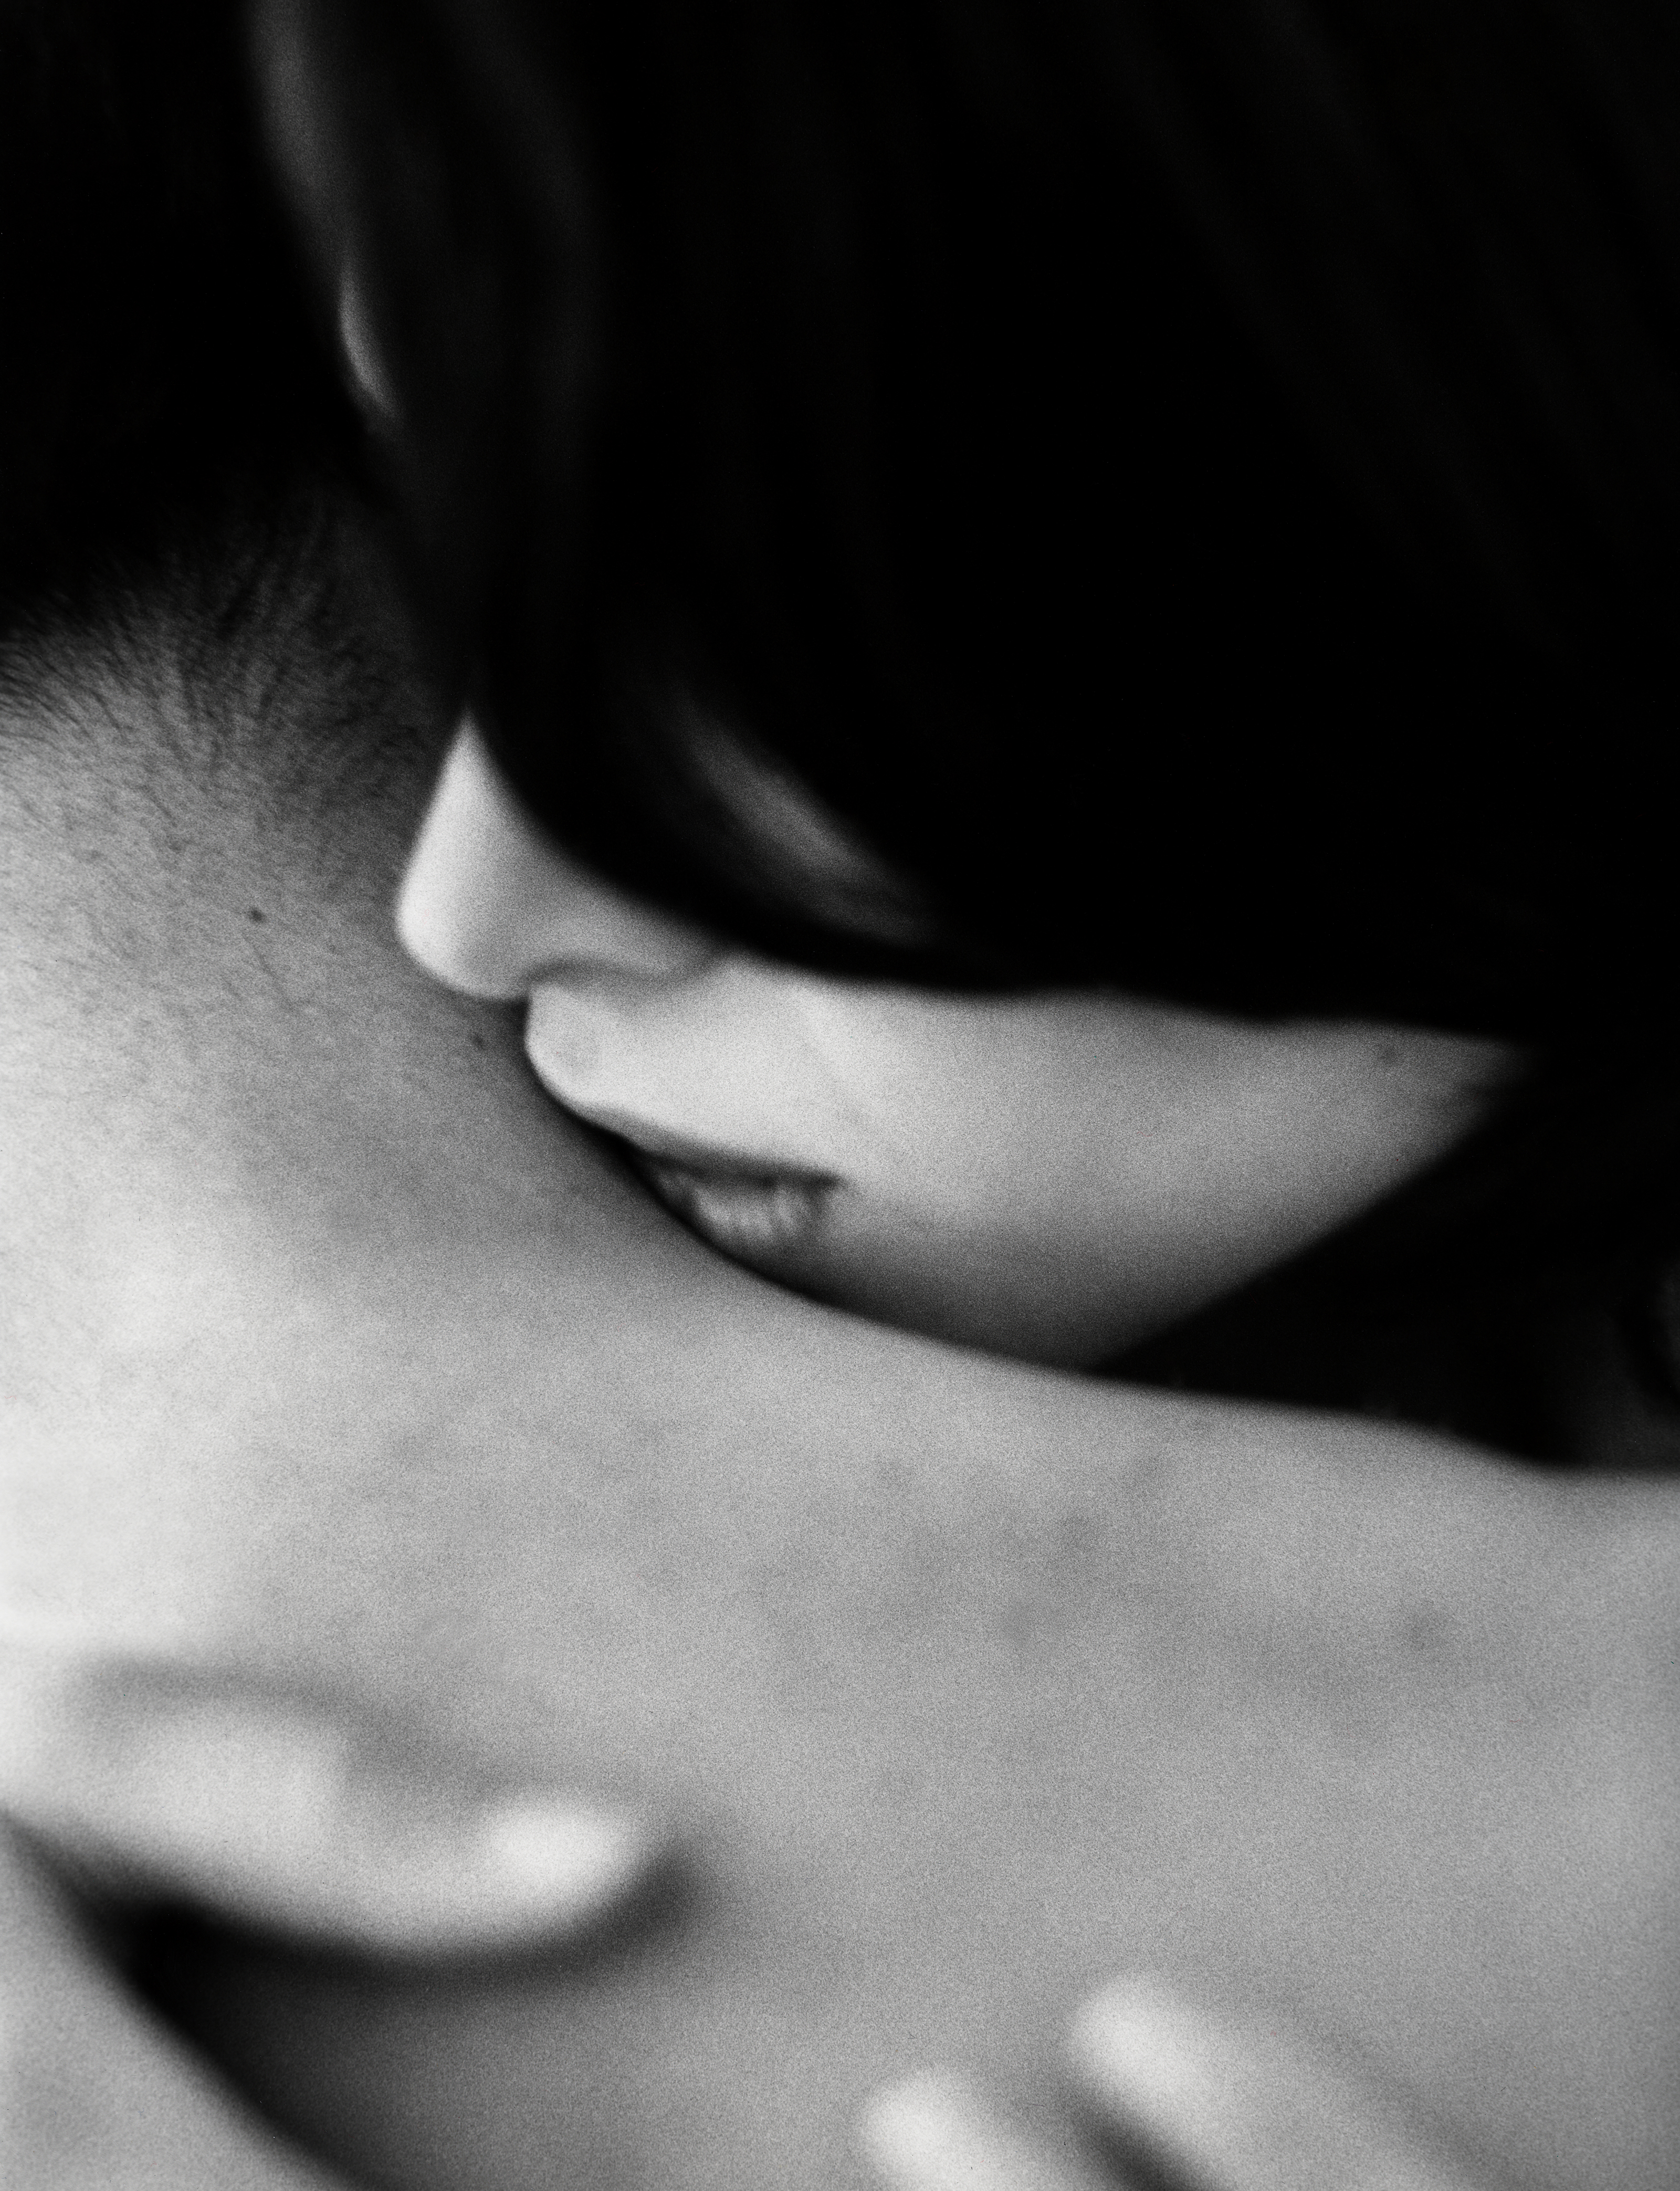 Поцелуй ниже живота. Поцелуй в шею. Мужчина целует женщину в шею. Нежный поцелуй в шею. Поцелуй в шею мужчине.